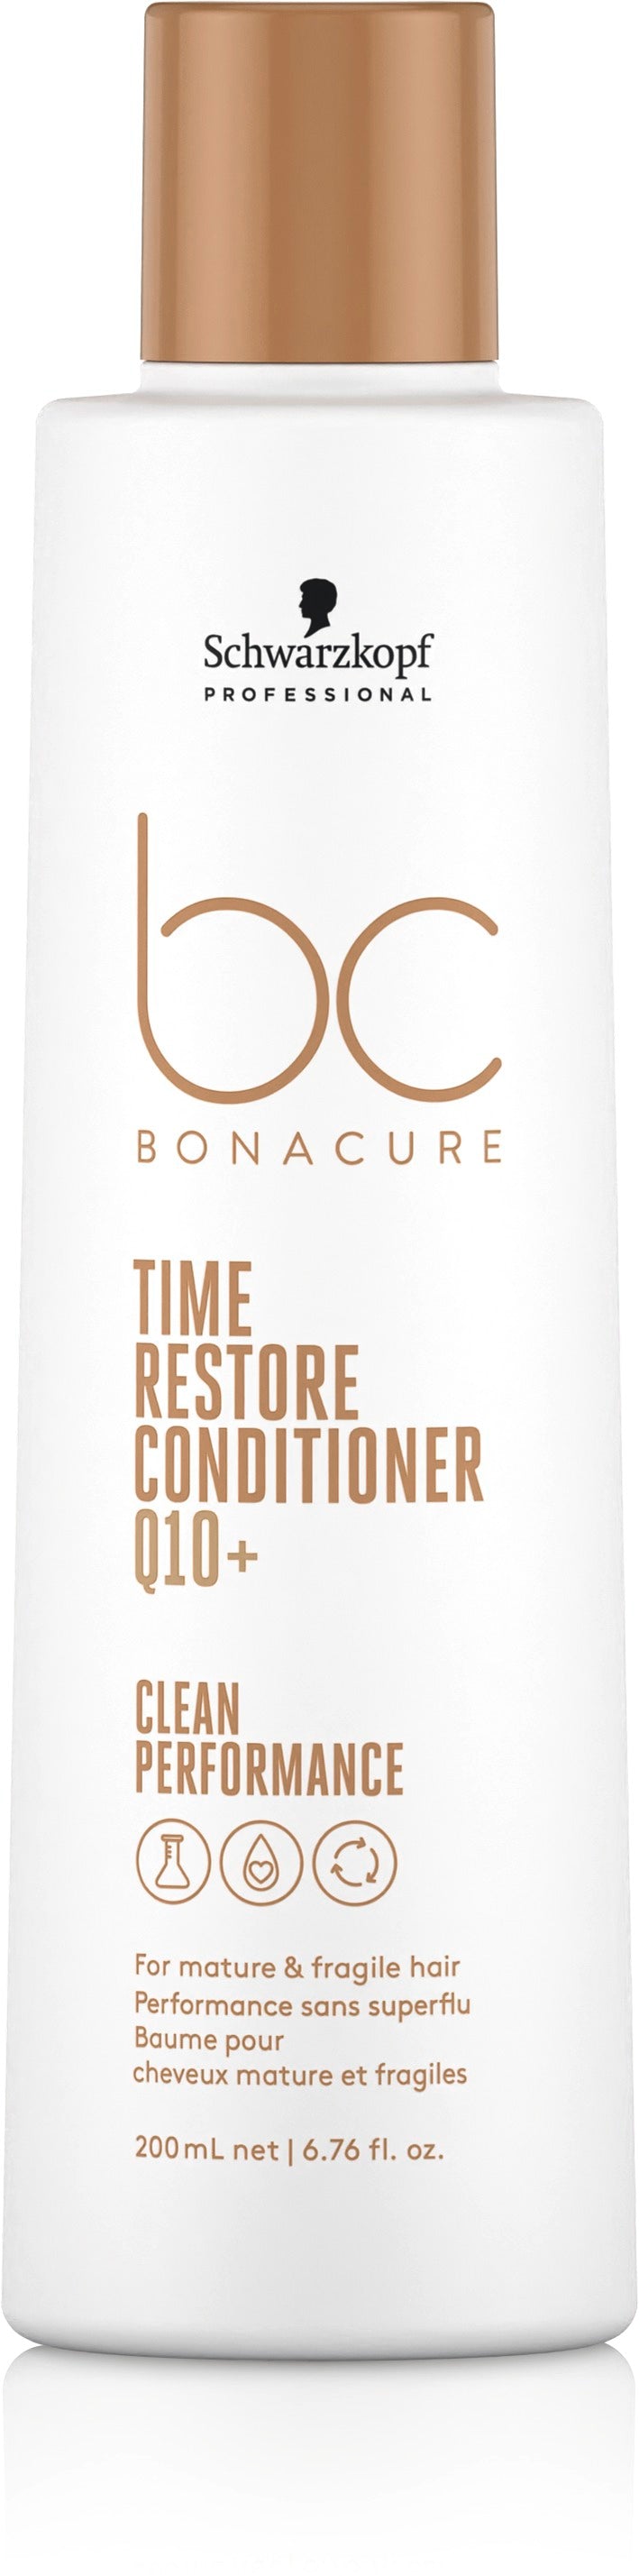 Bc Q10 Time Restore Shampoo 250Ml